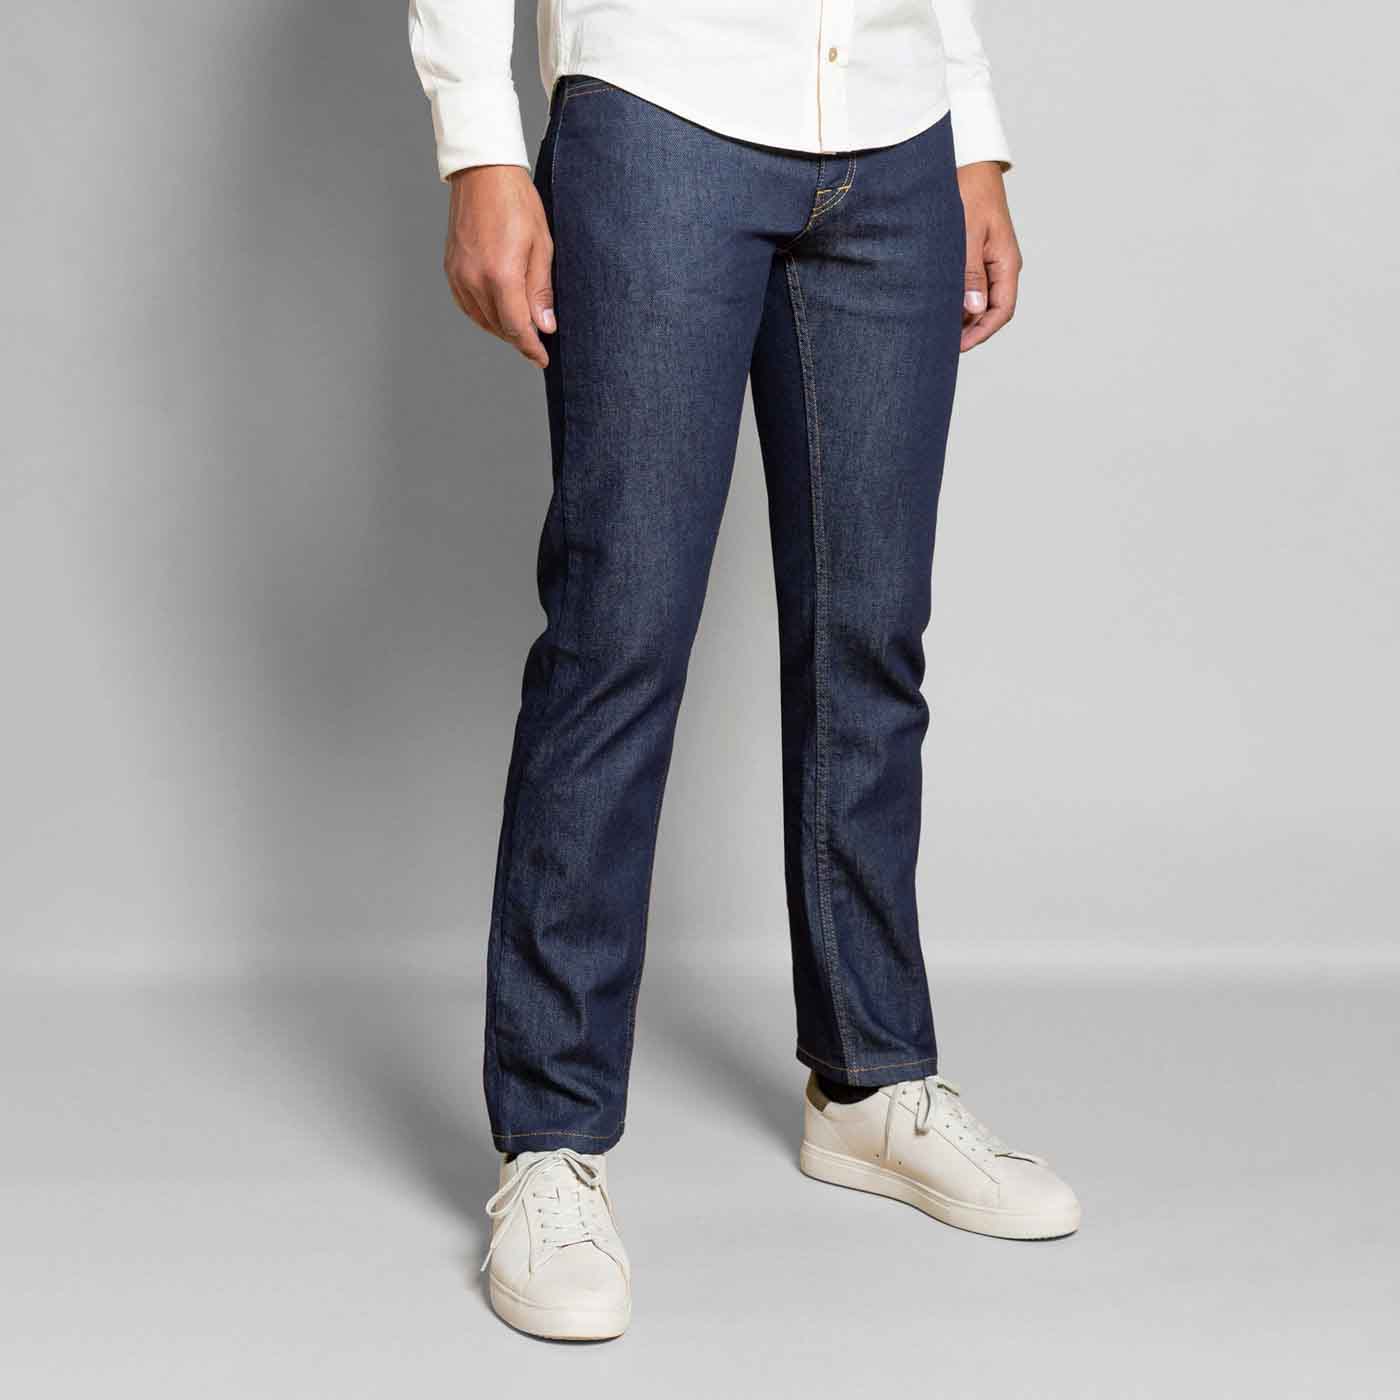 https://daodavy.com/cdn/shop/products/Jeans-homme-brut-bleu-coton-bio-coupe-droite-profil.jpg?v=1676531421